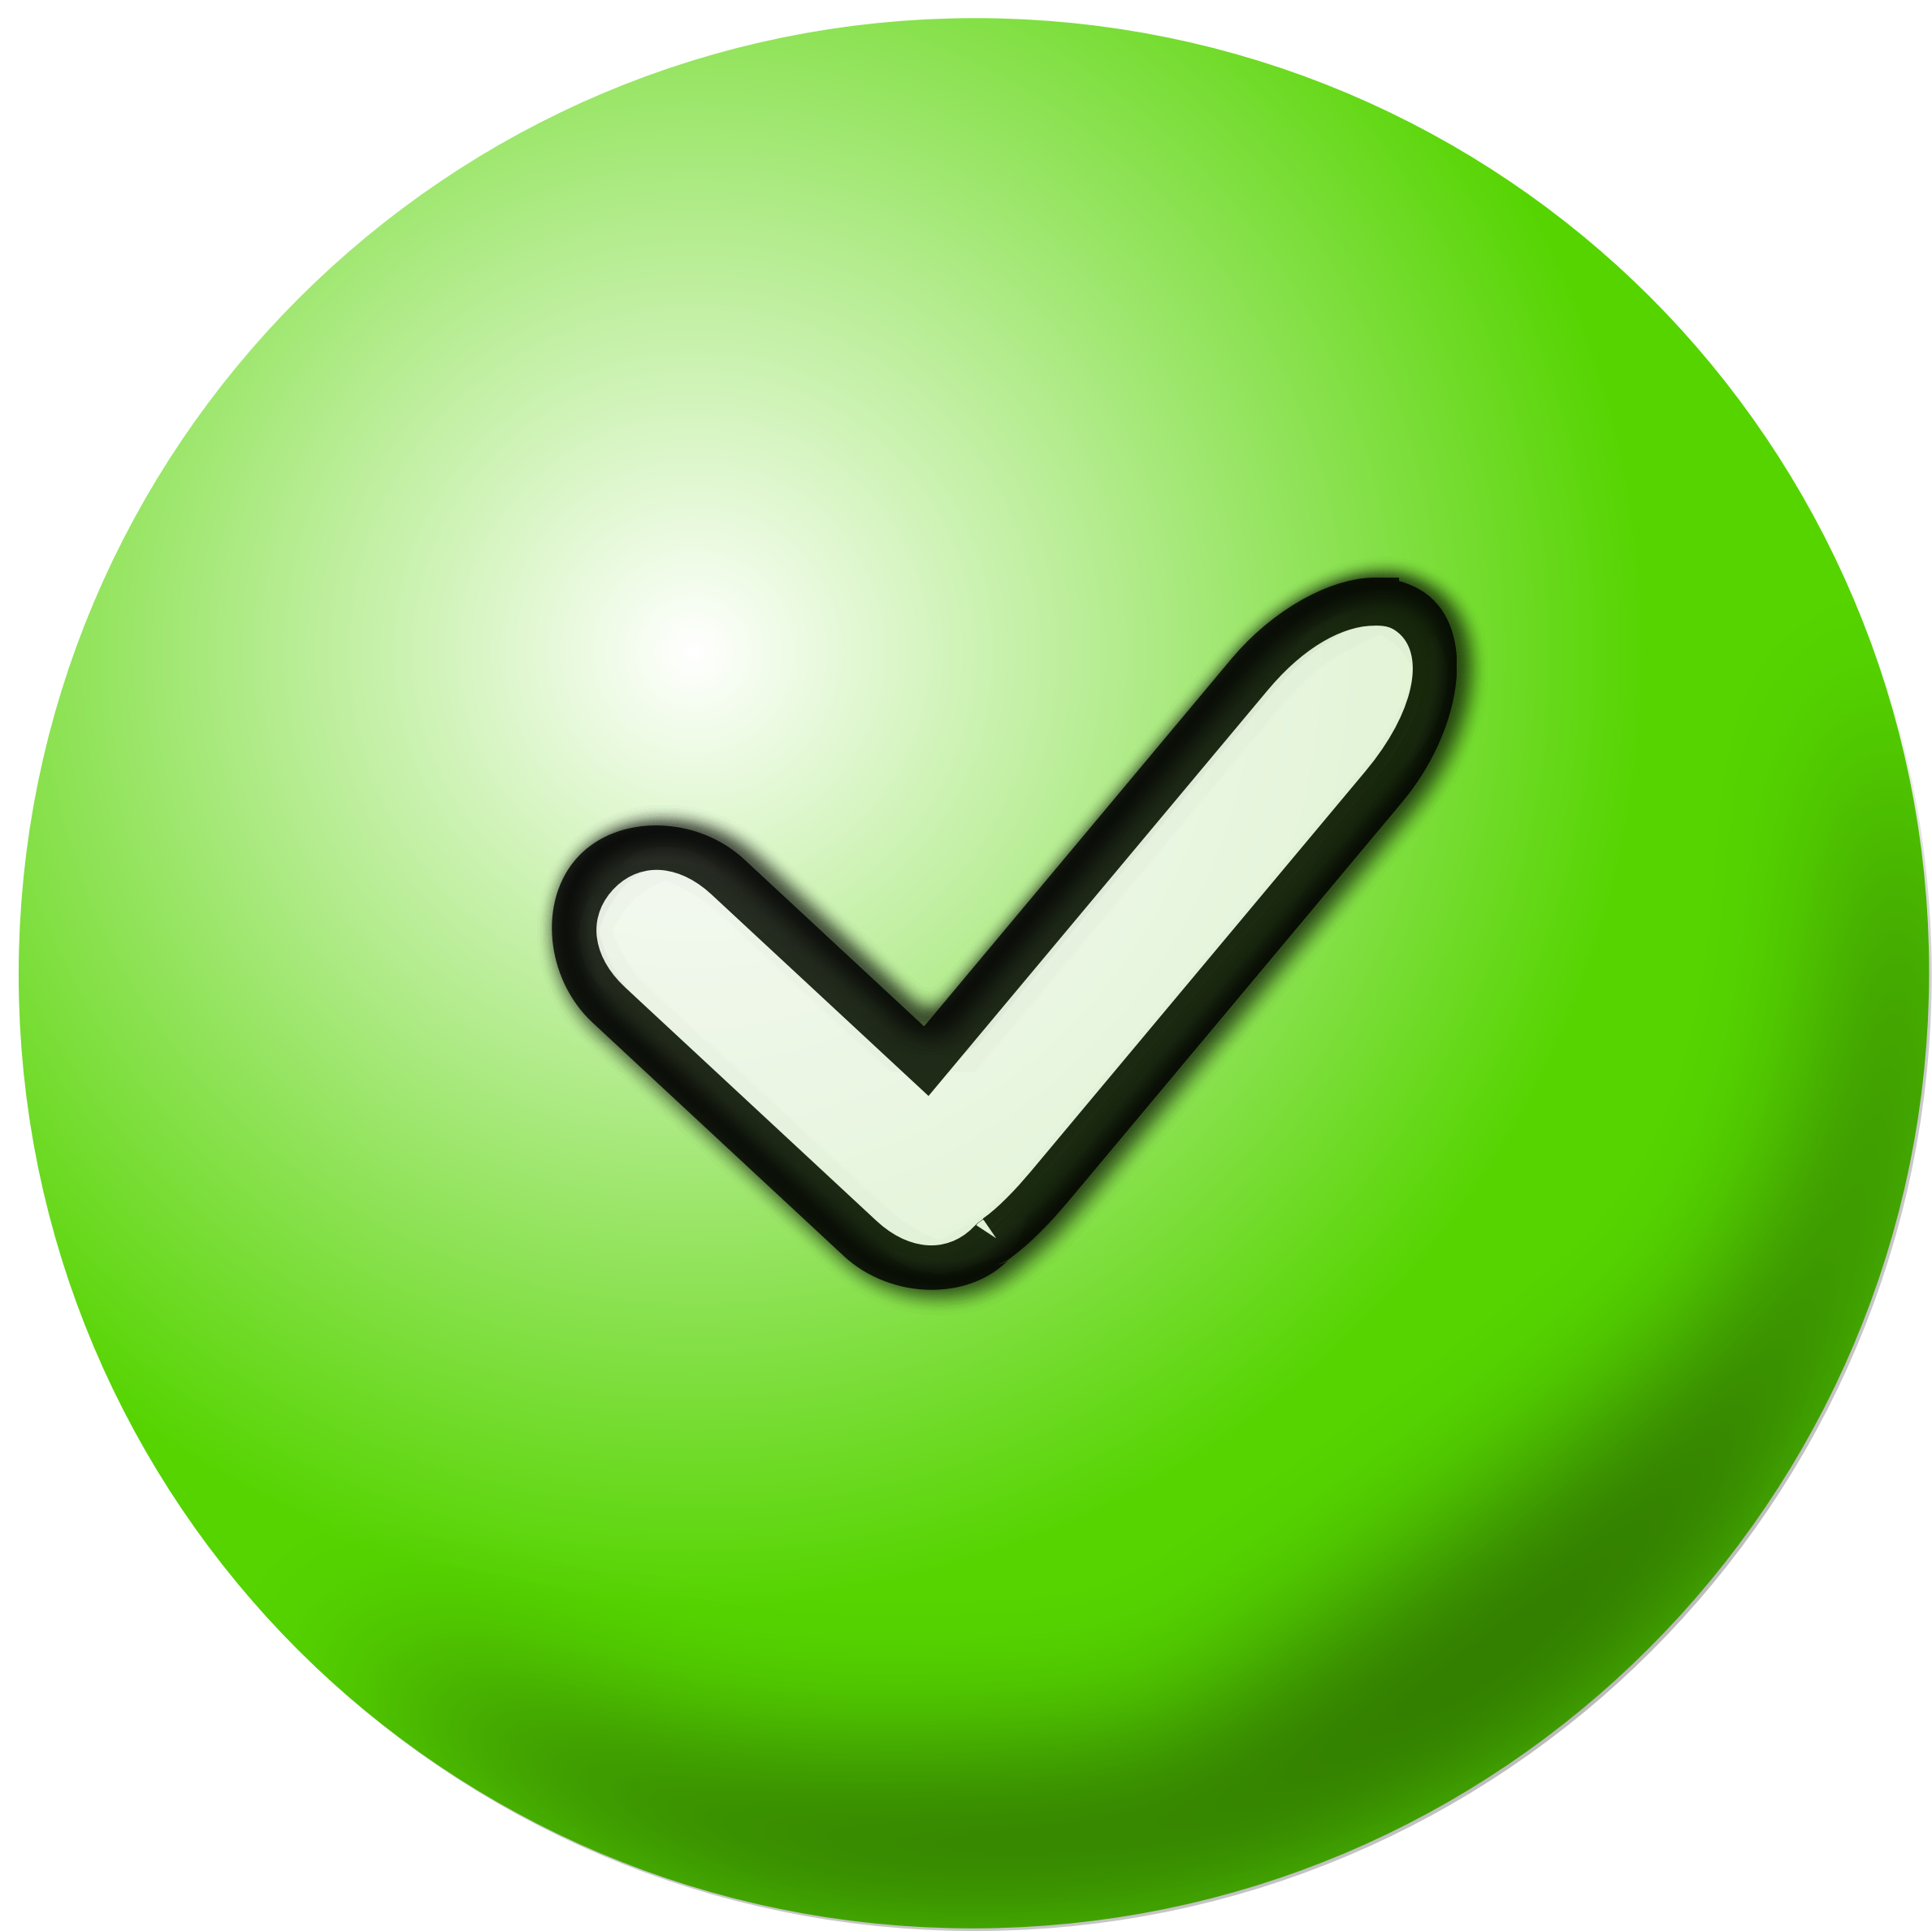 Clipart green check mark icon - Cliparting.com